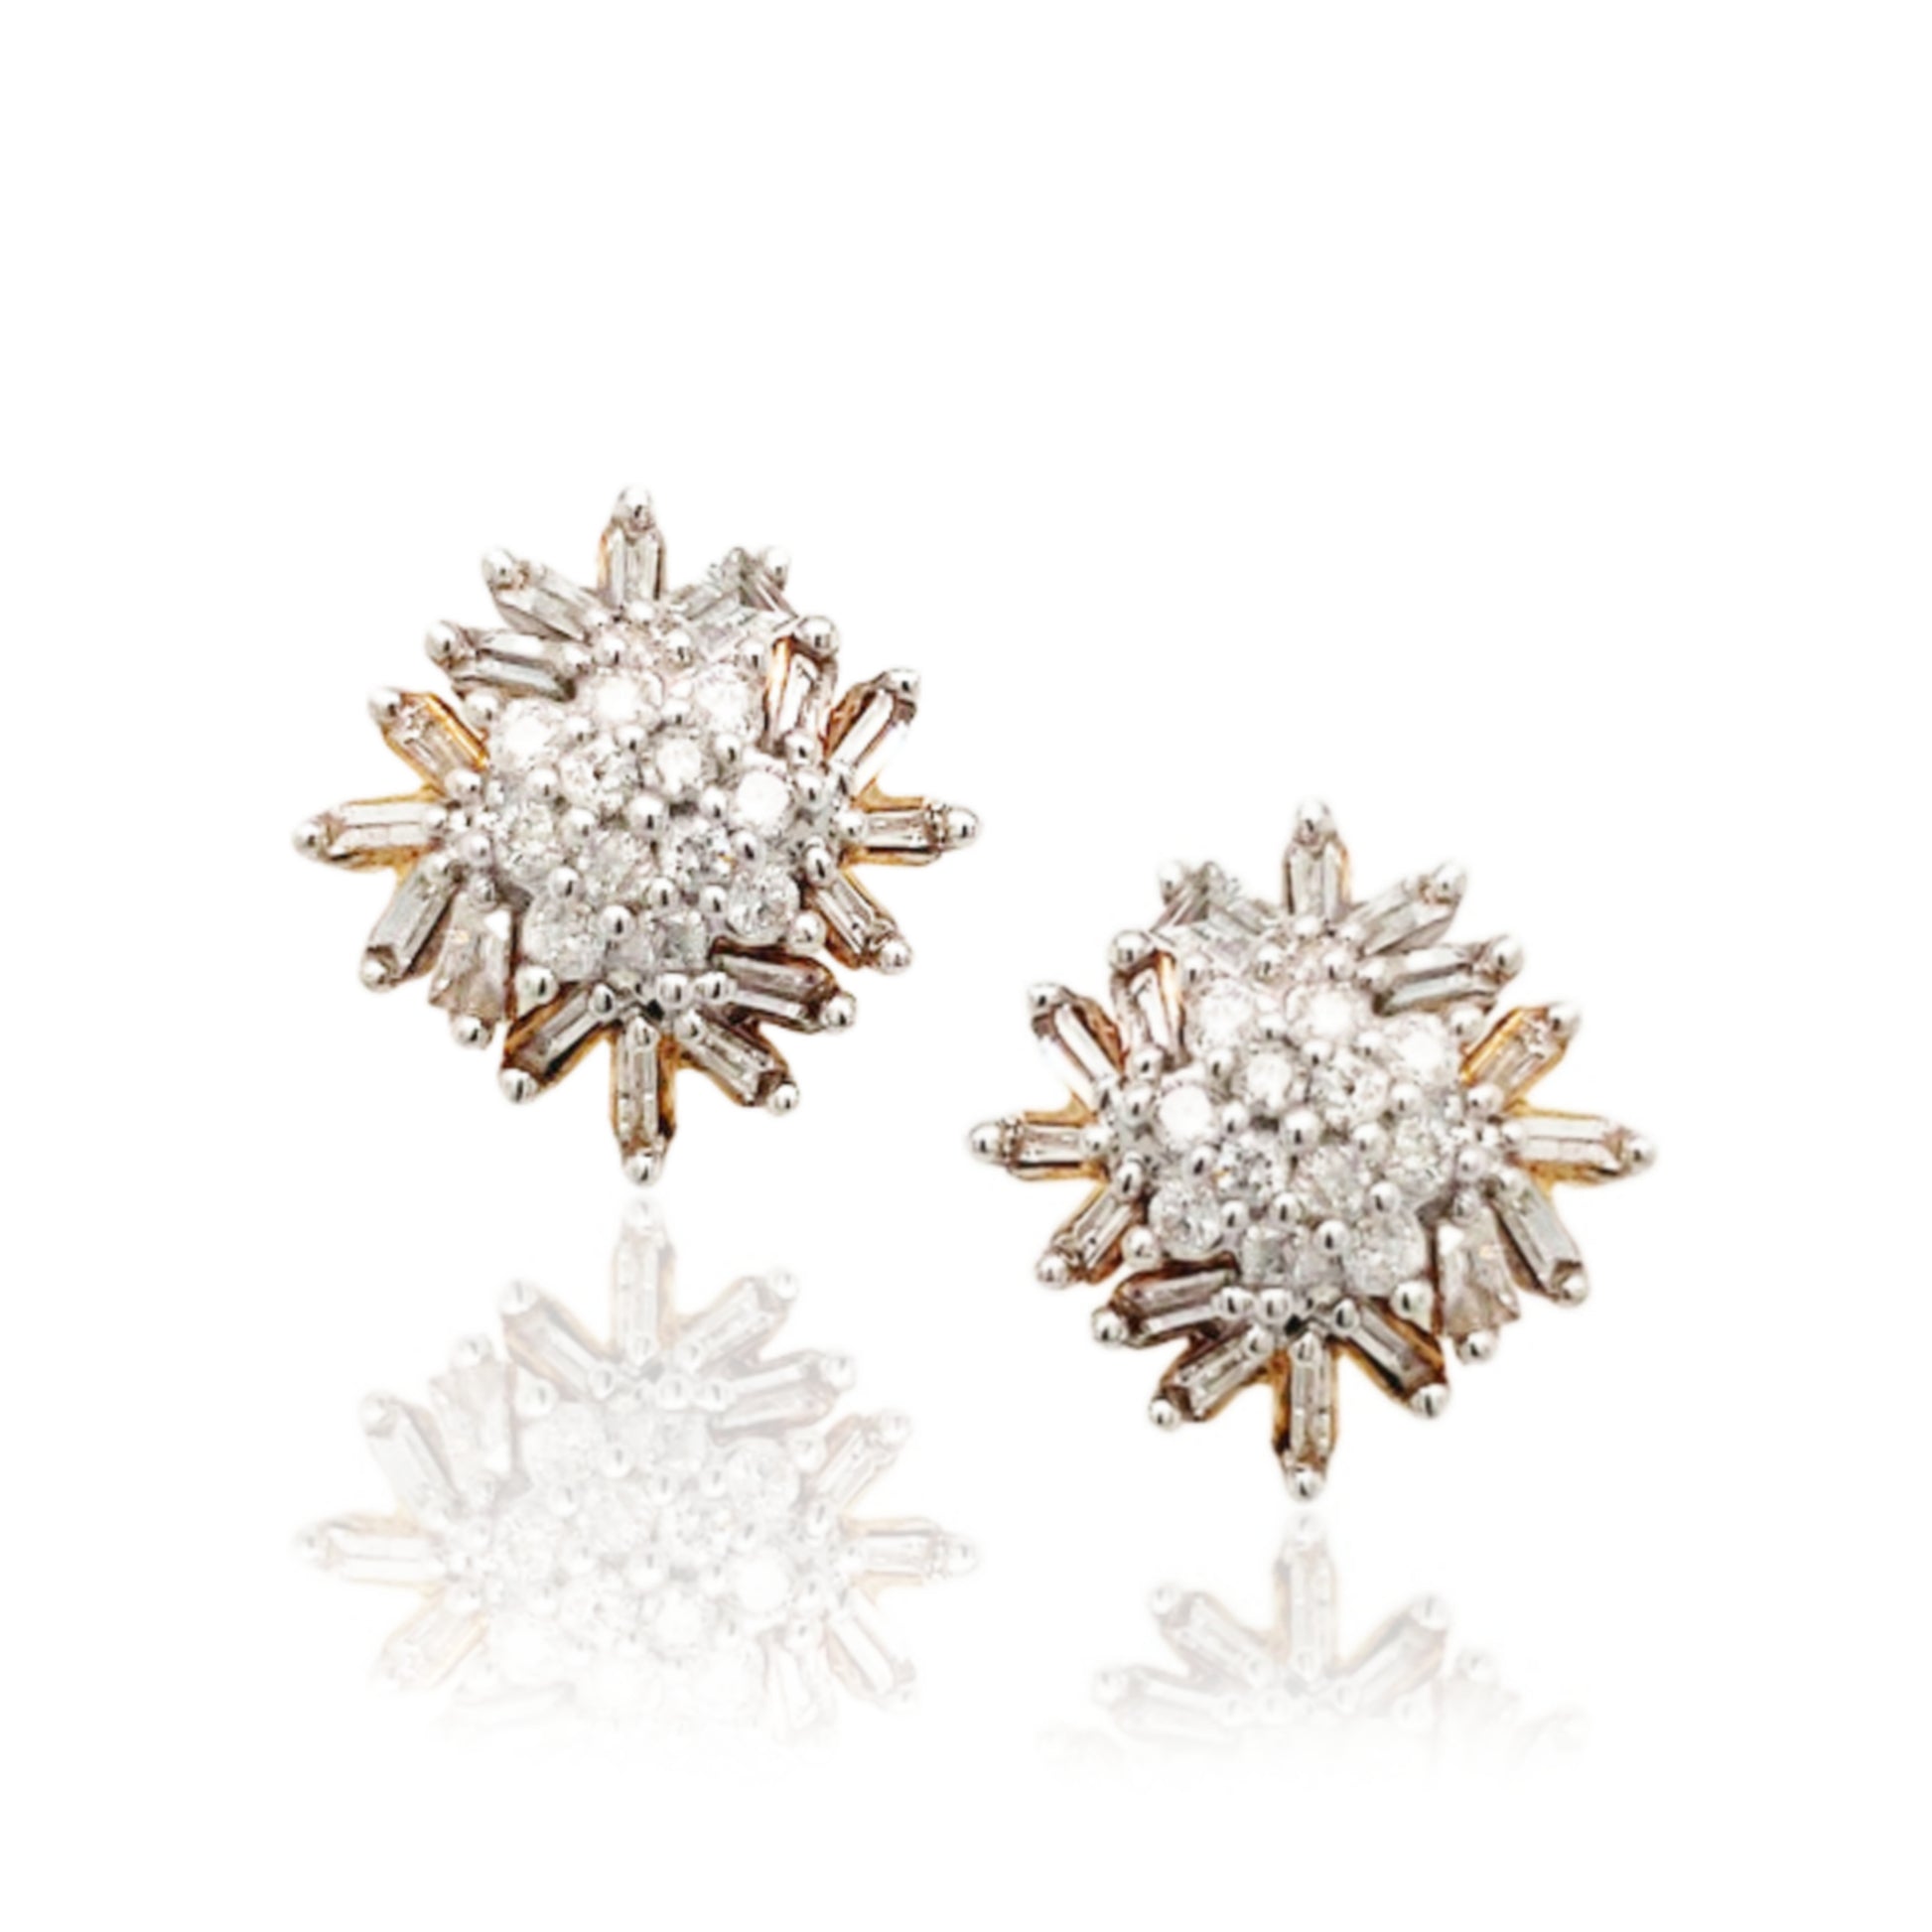 10K Yellow Gold Diamond Stud Earrings - HK Jewels